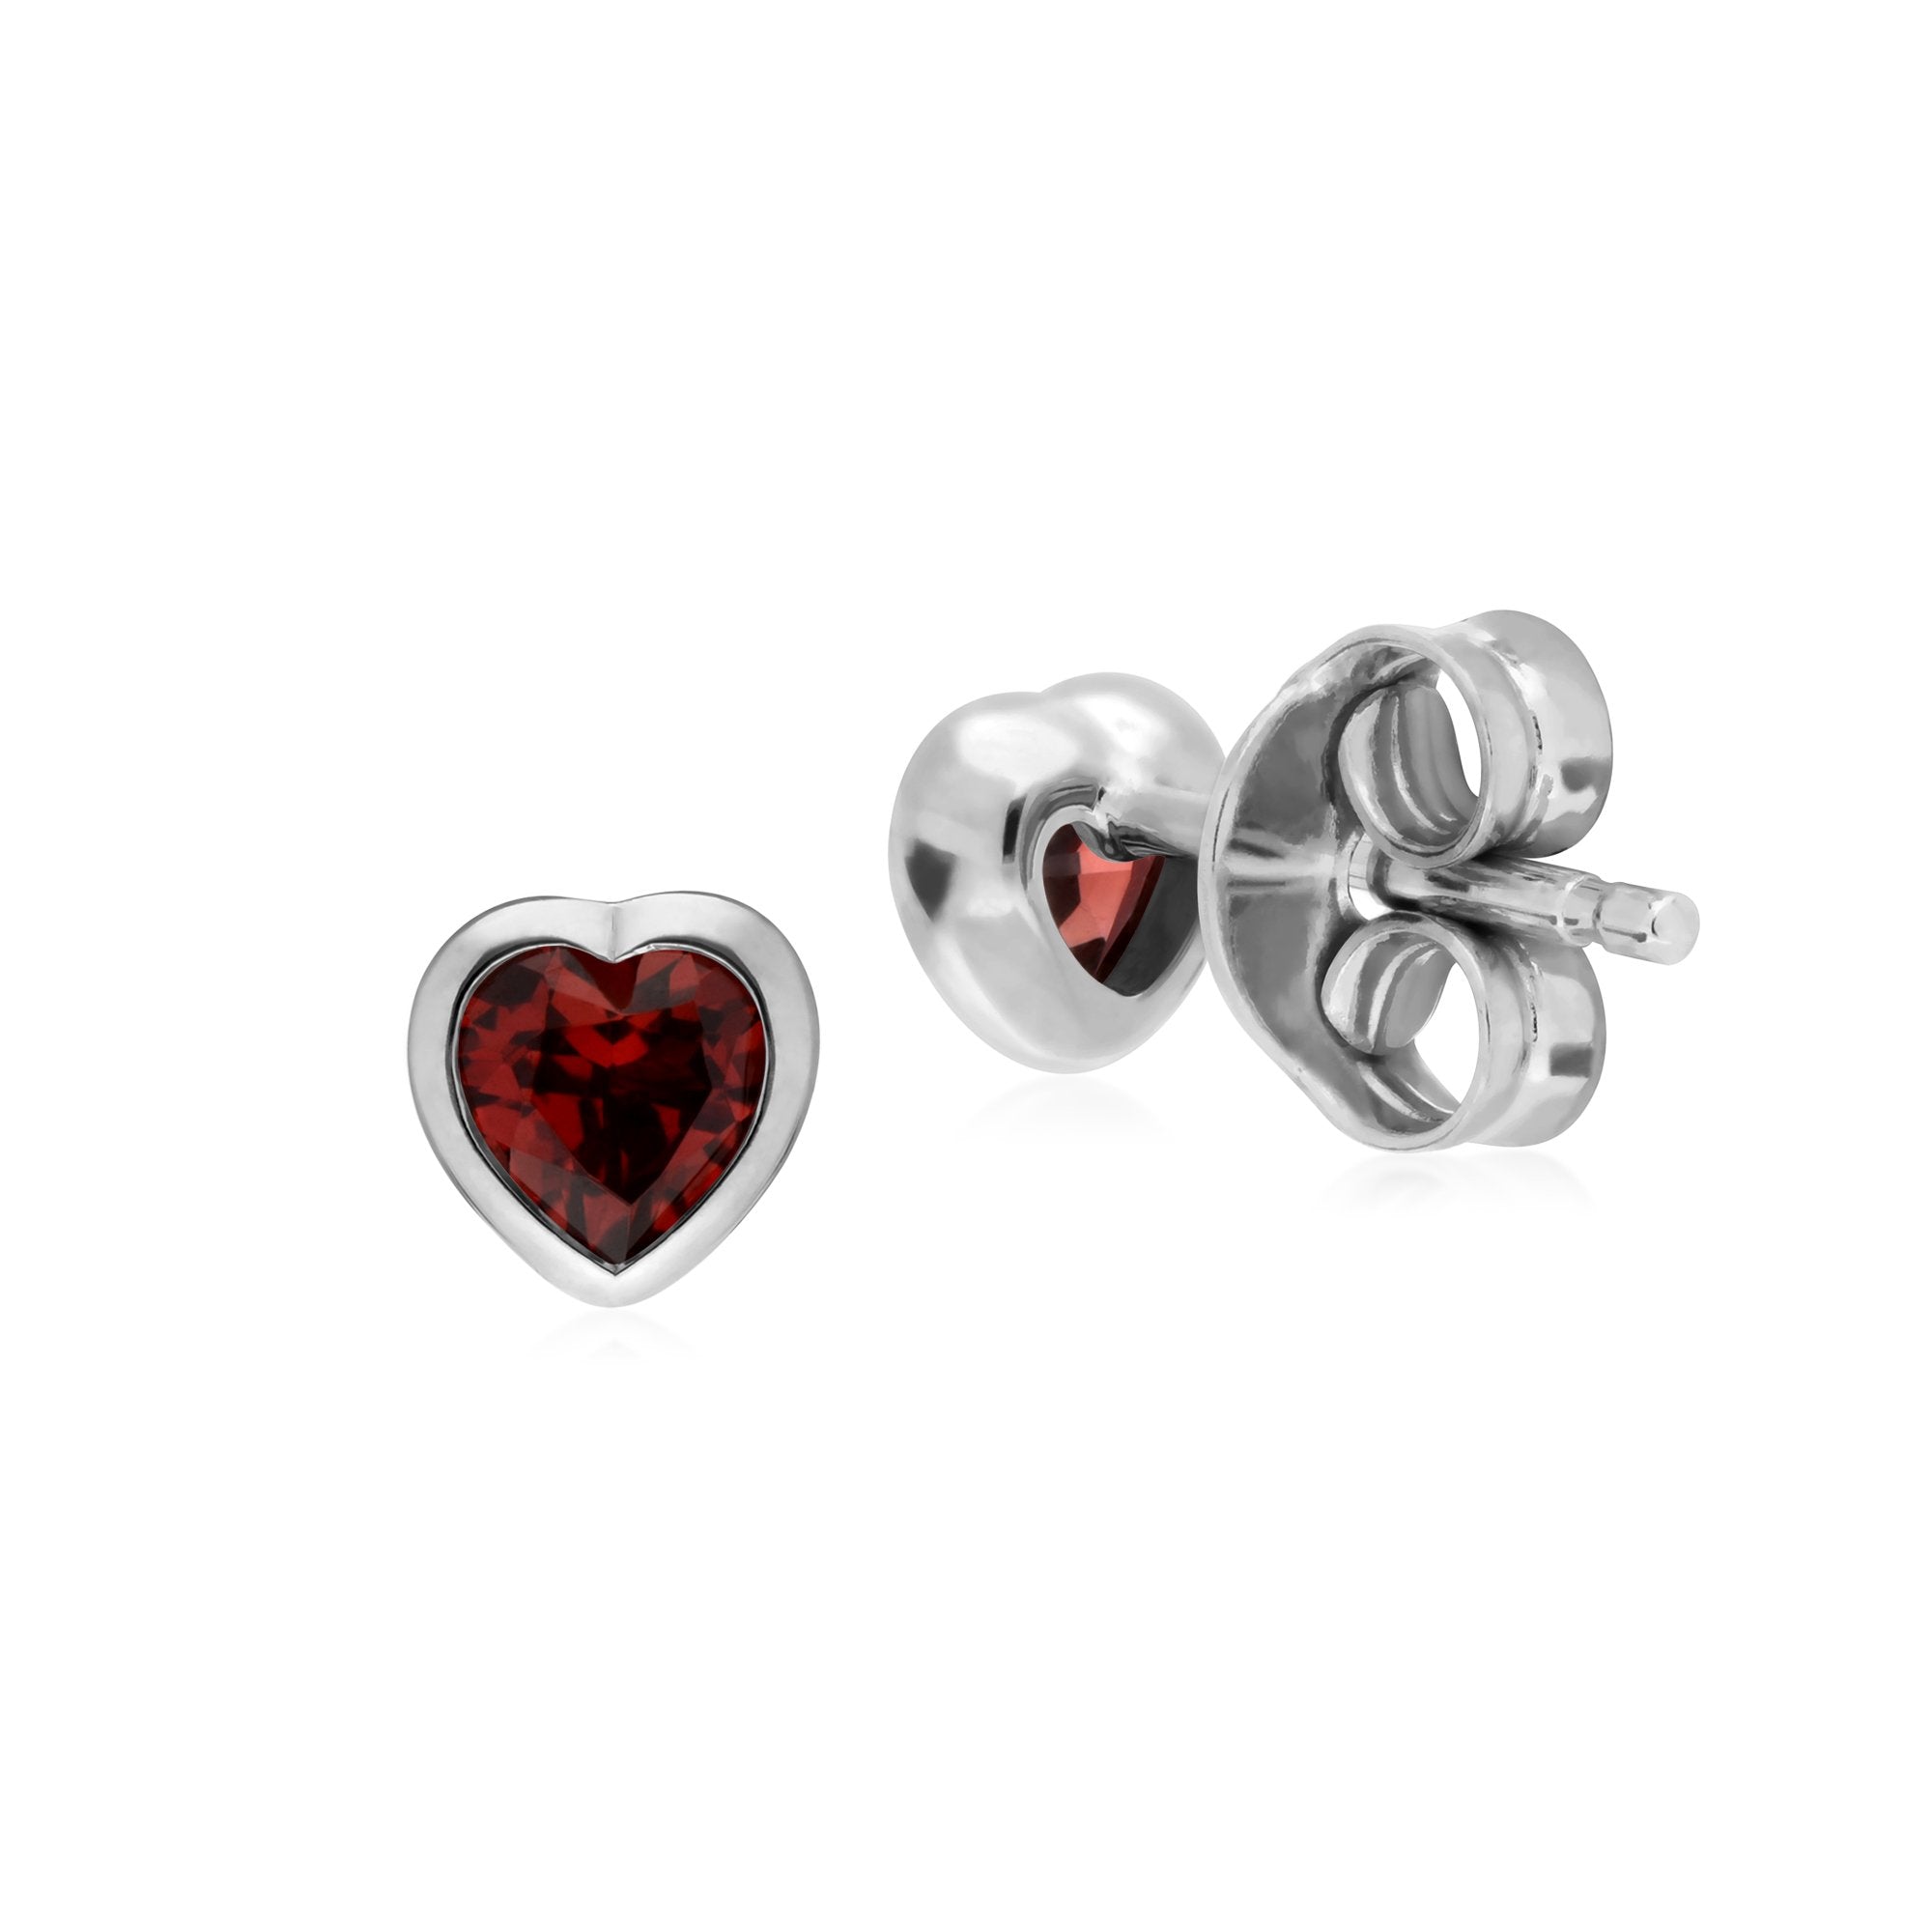 Essential Heart Shaped Garnet Stud Earrings in 925 Sterling Silver 4.5mm